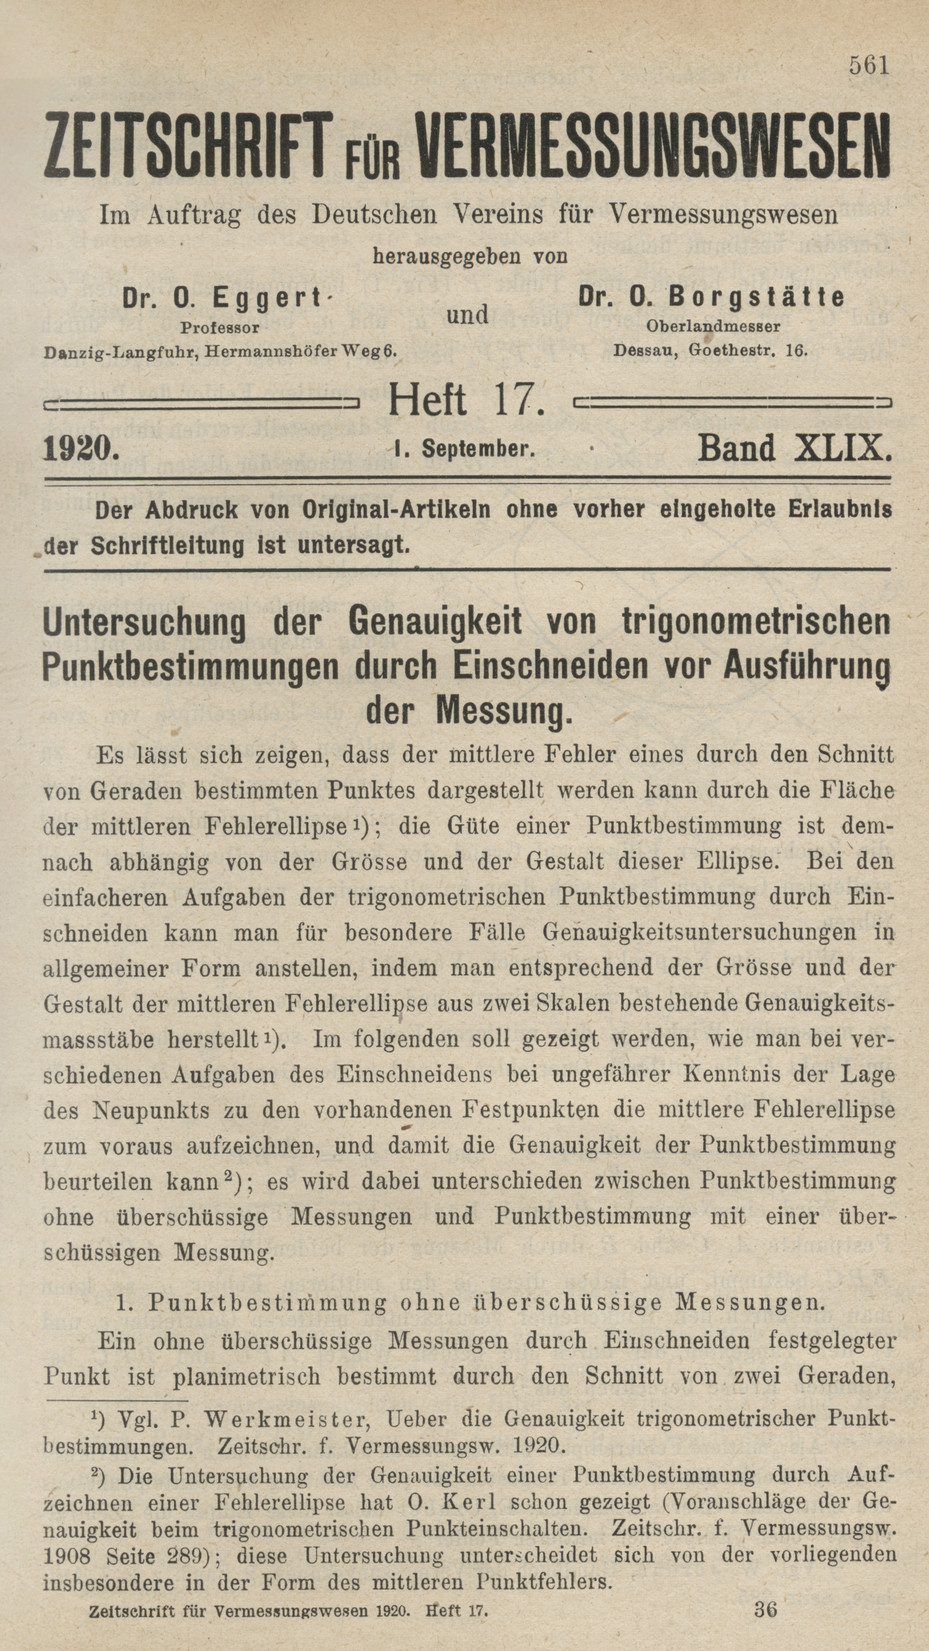 Zeitschrift für Vermessungswesen, Heft 17, Band XLIX